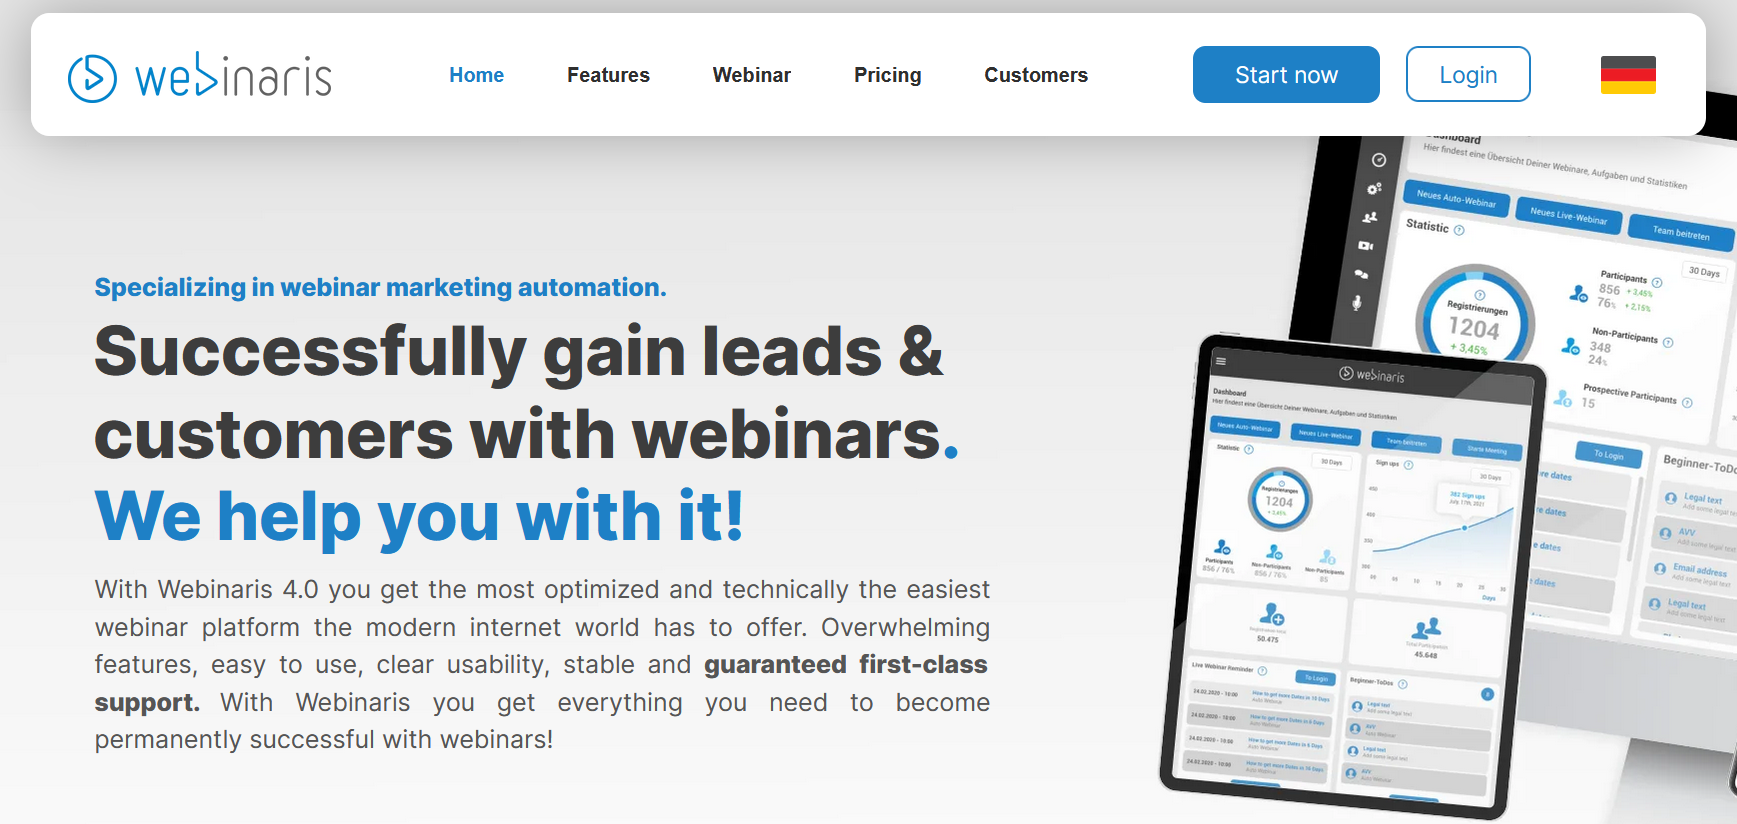 The Webinaris website